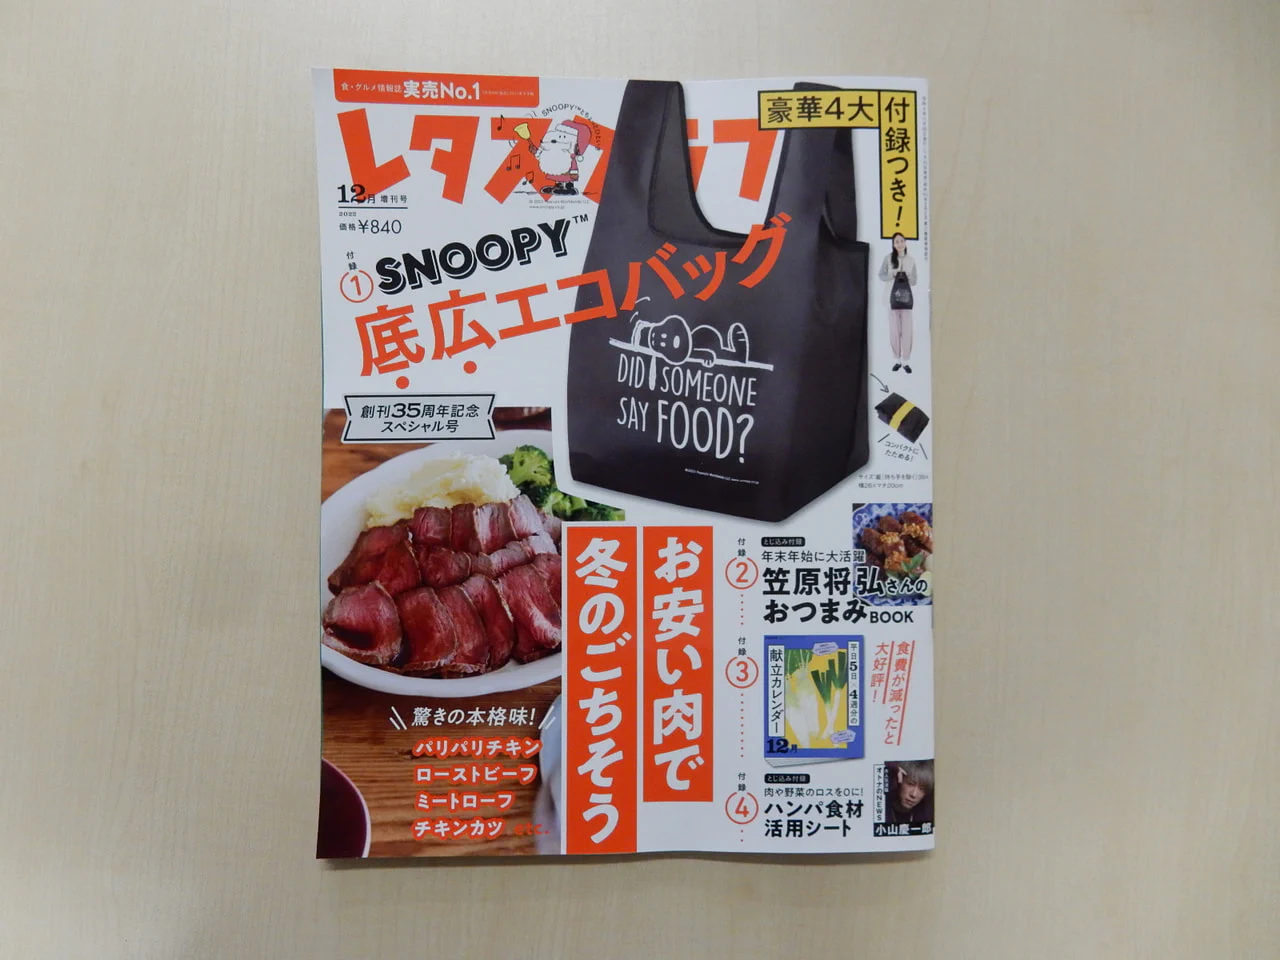 『レタスクラブ』12月号に宮本先生が取材を受けられた記事が掲載されています